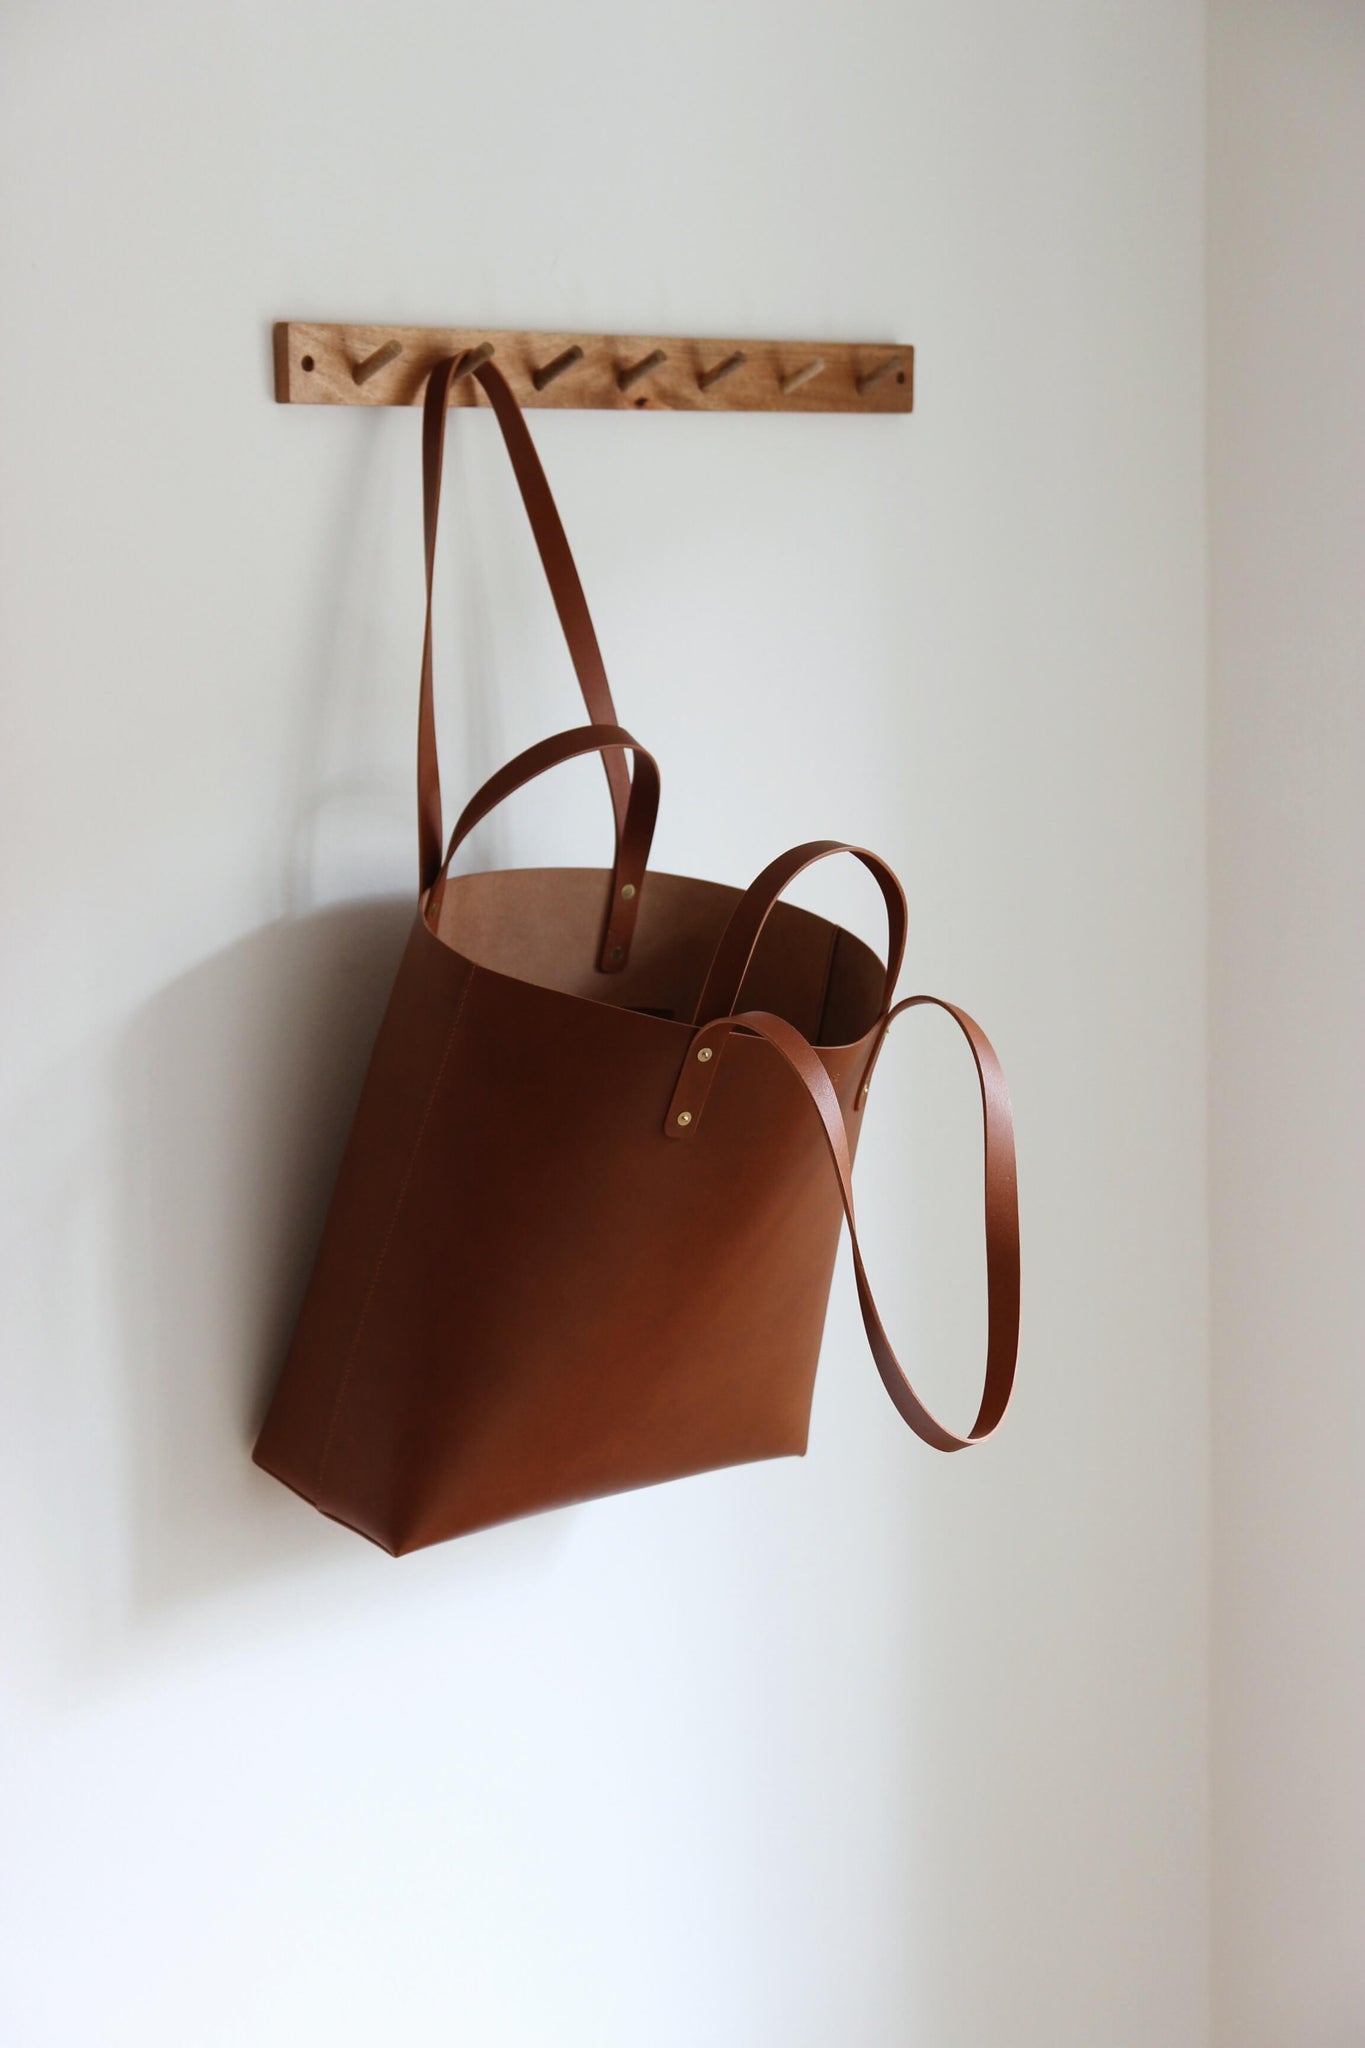 An einer Garderobenleiste aus Holz hängt an einem Henkel ein Leder Shopper in Braun.